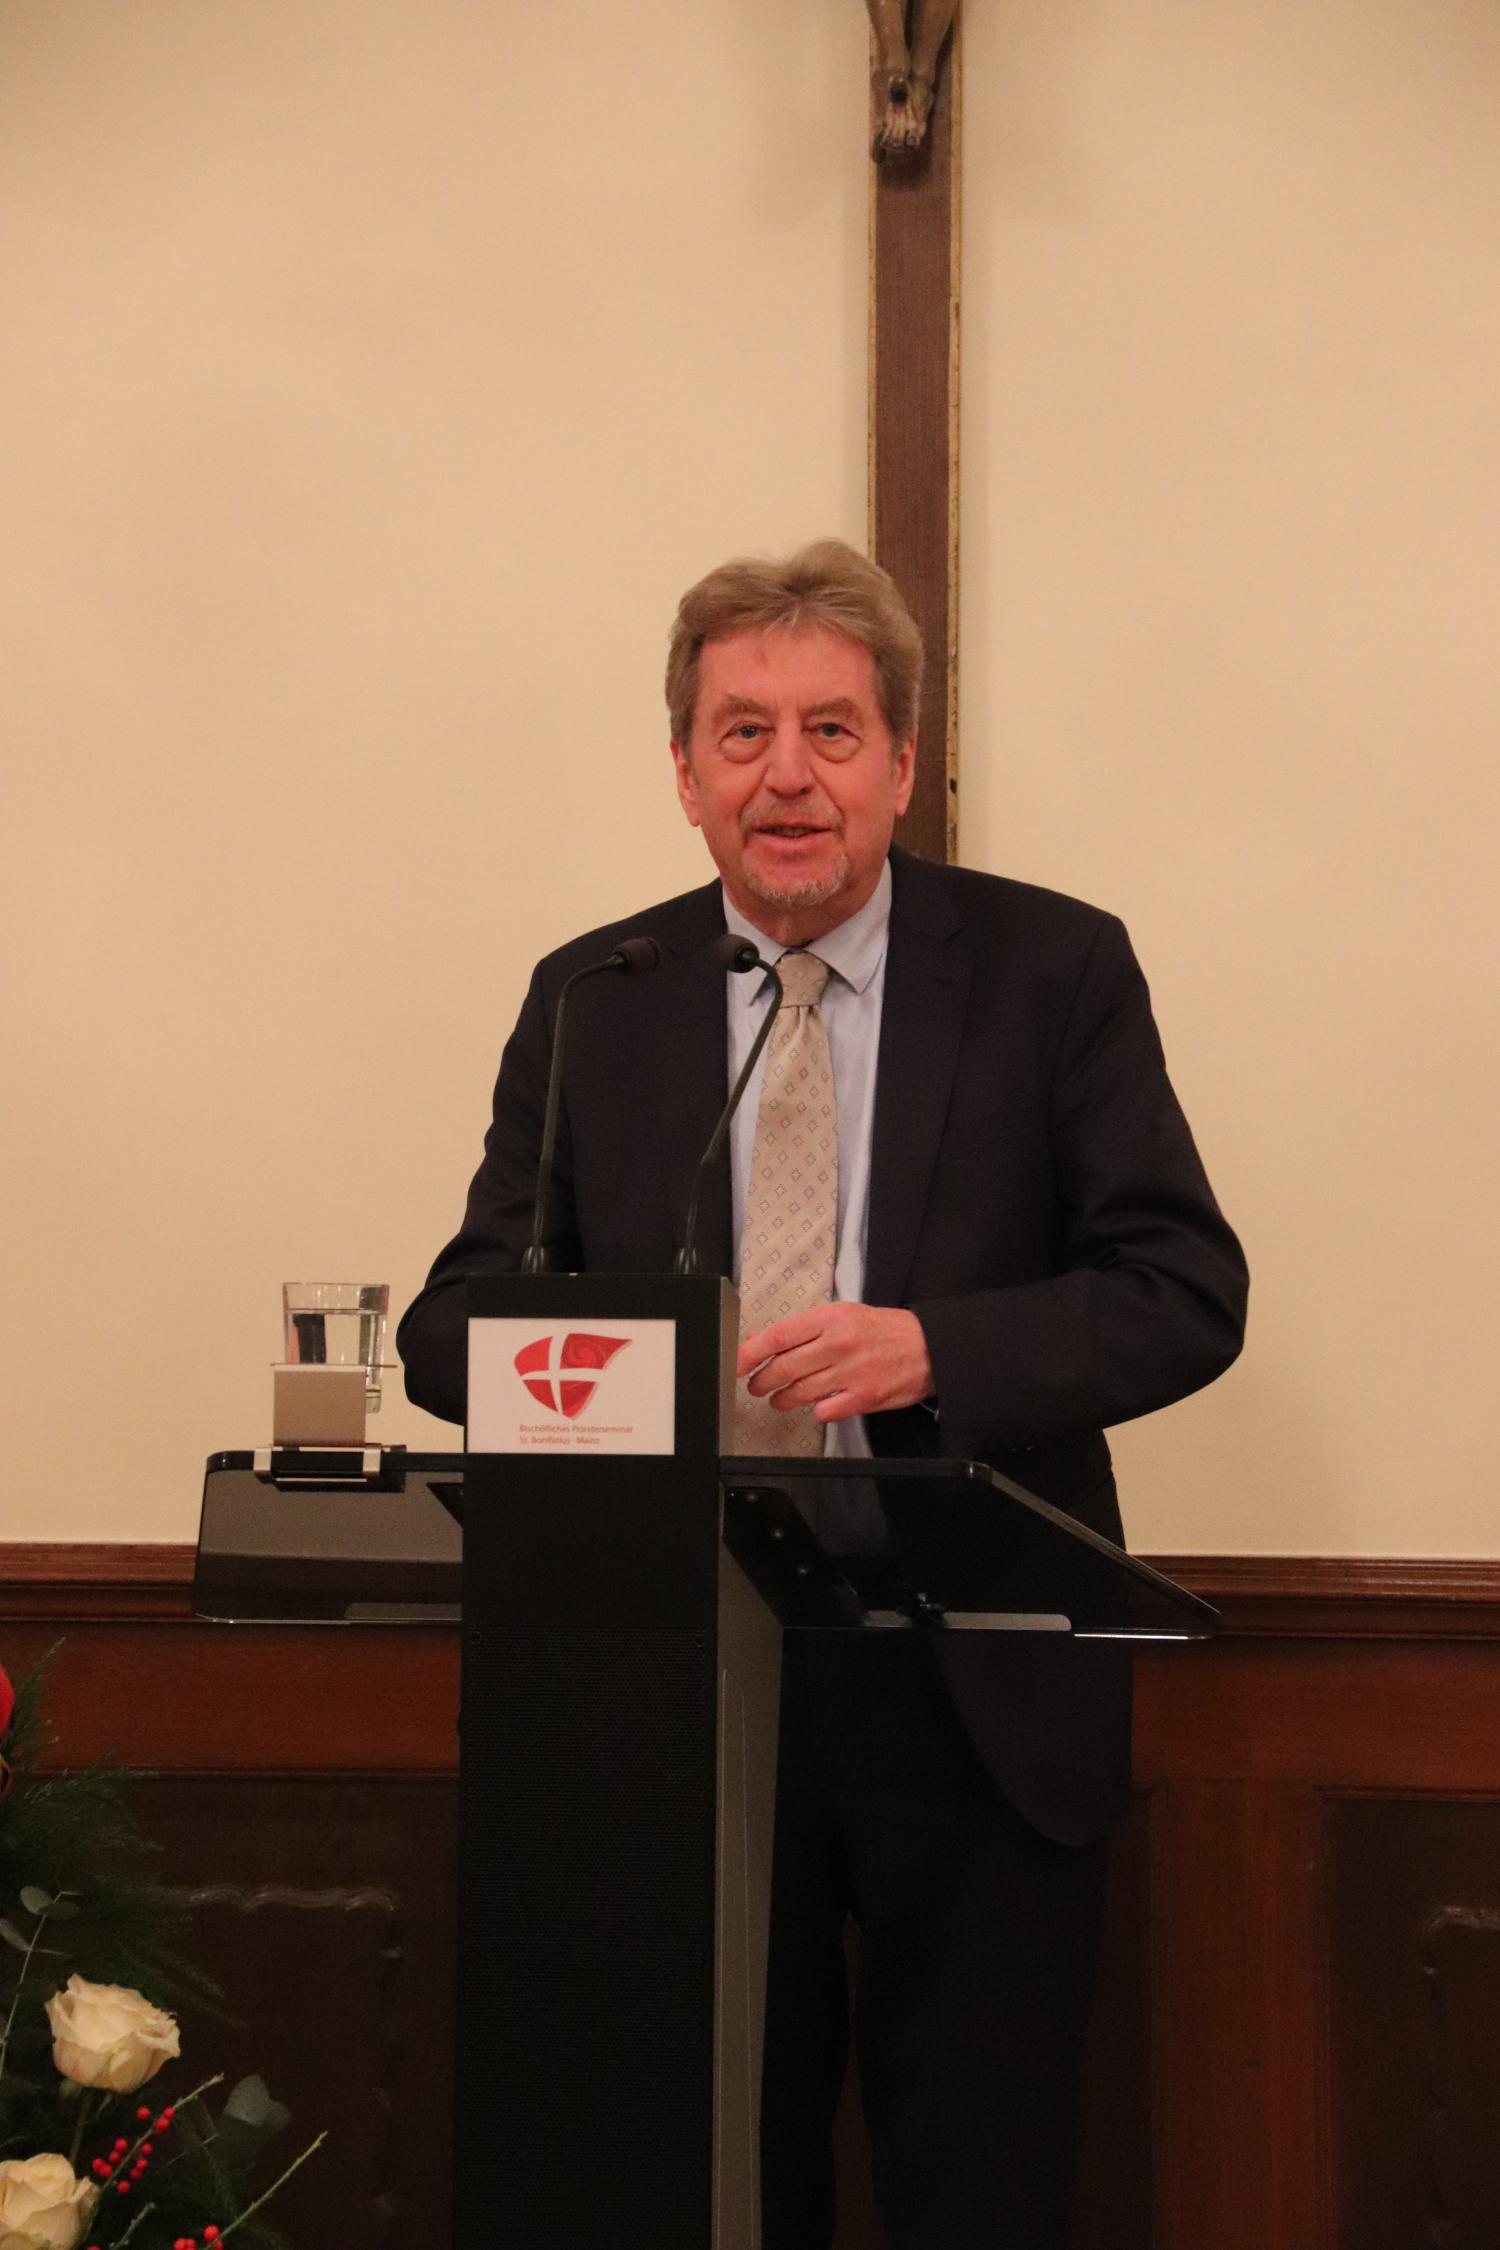 Sozialphilosoph Professor Hans Joas bei seinem Festvortrag im Mainzer Priesterseminar (c) Bistum Mainz/Hoffmann